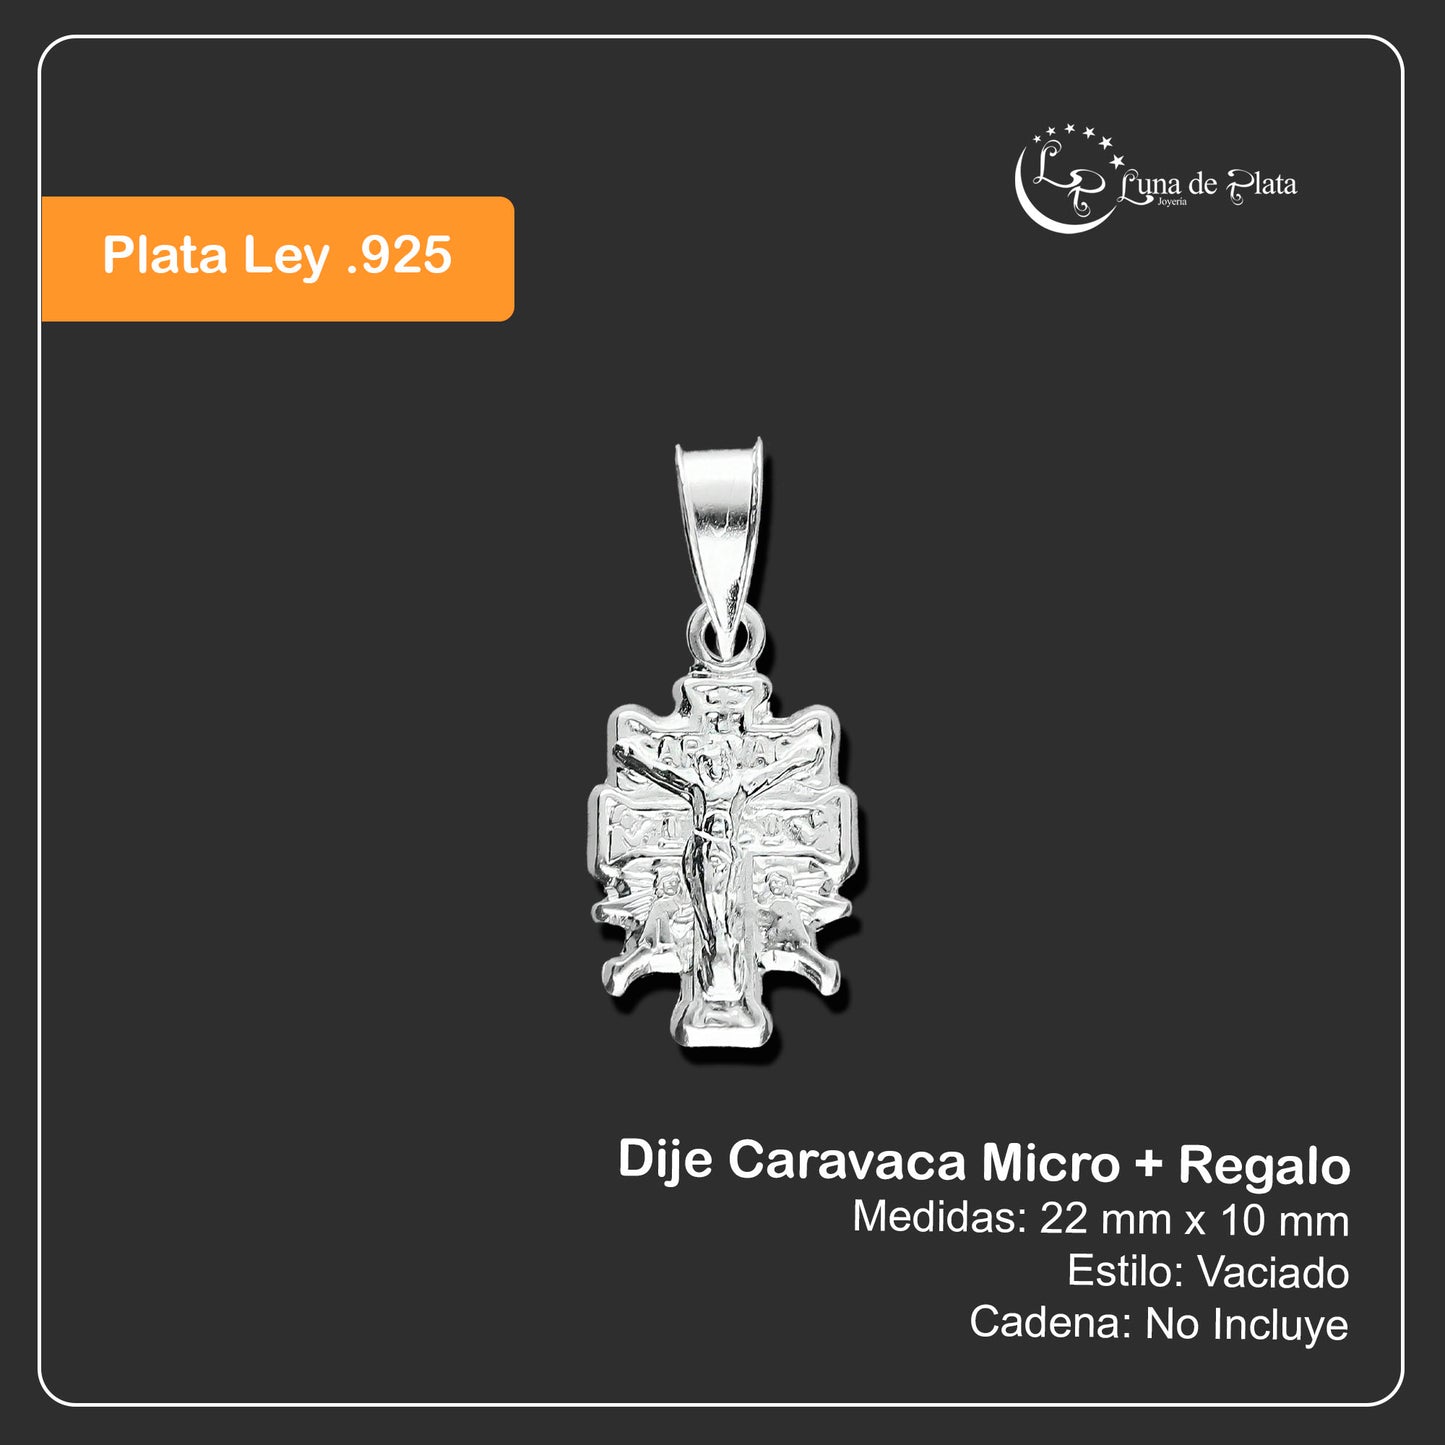 LPDJ126 Dije Caravaca Micro + Regalo Plata .925 Taxco Gro 1410365007